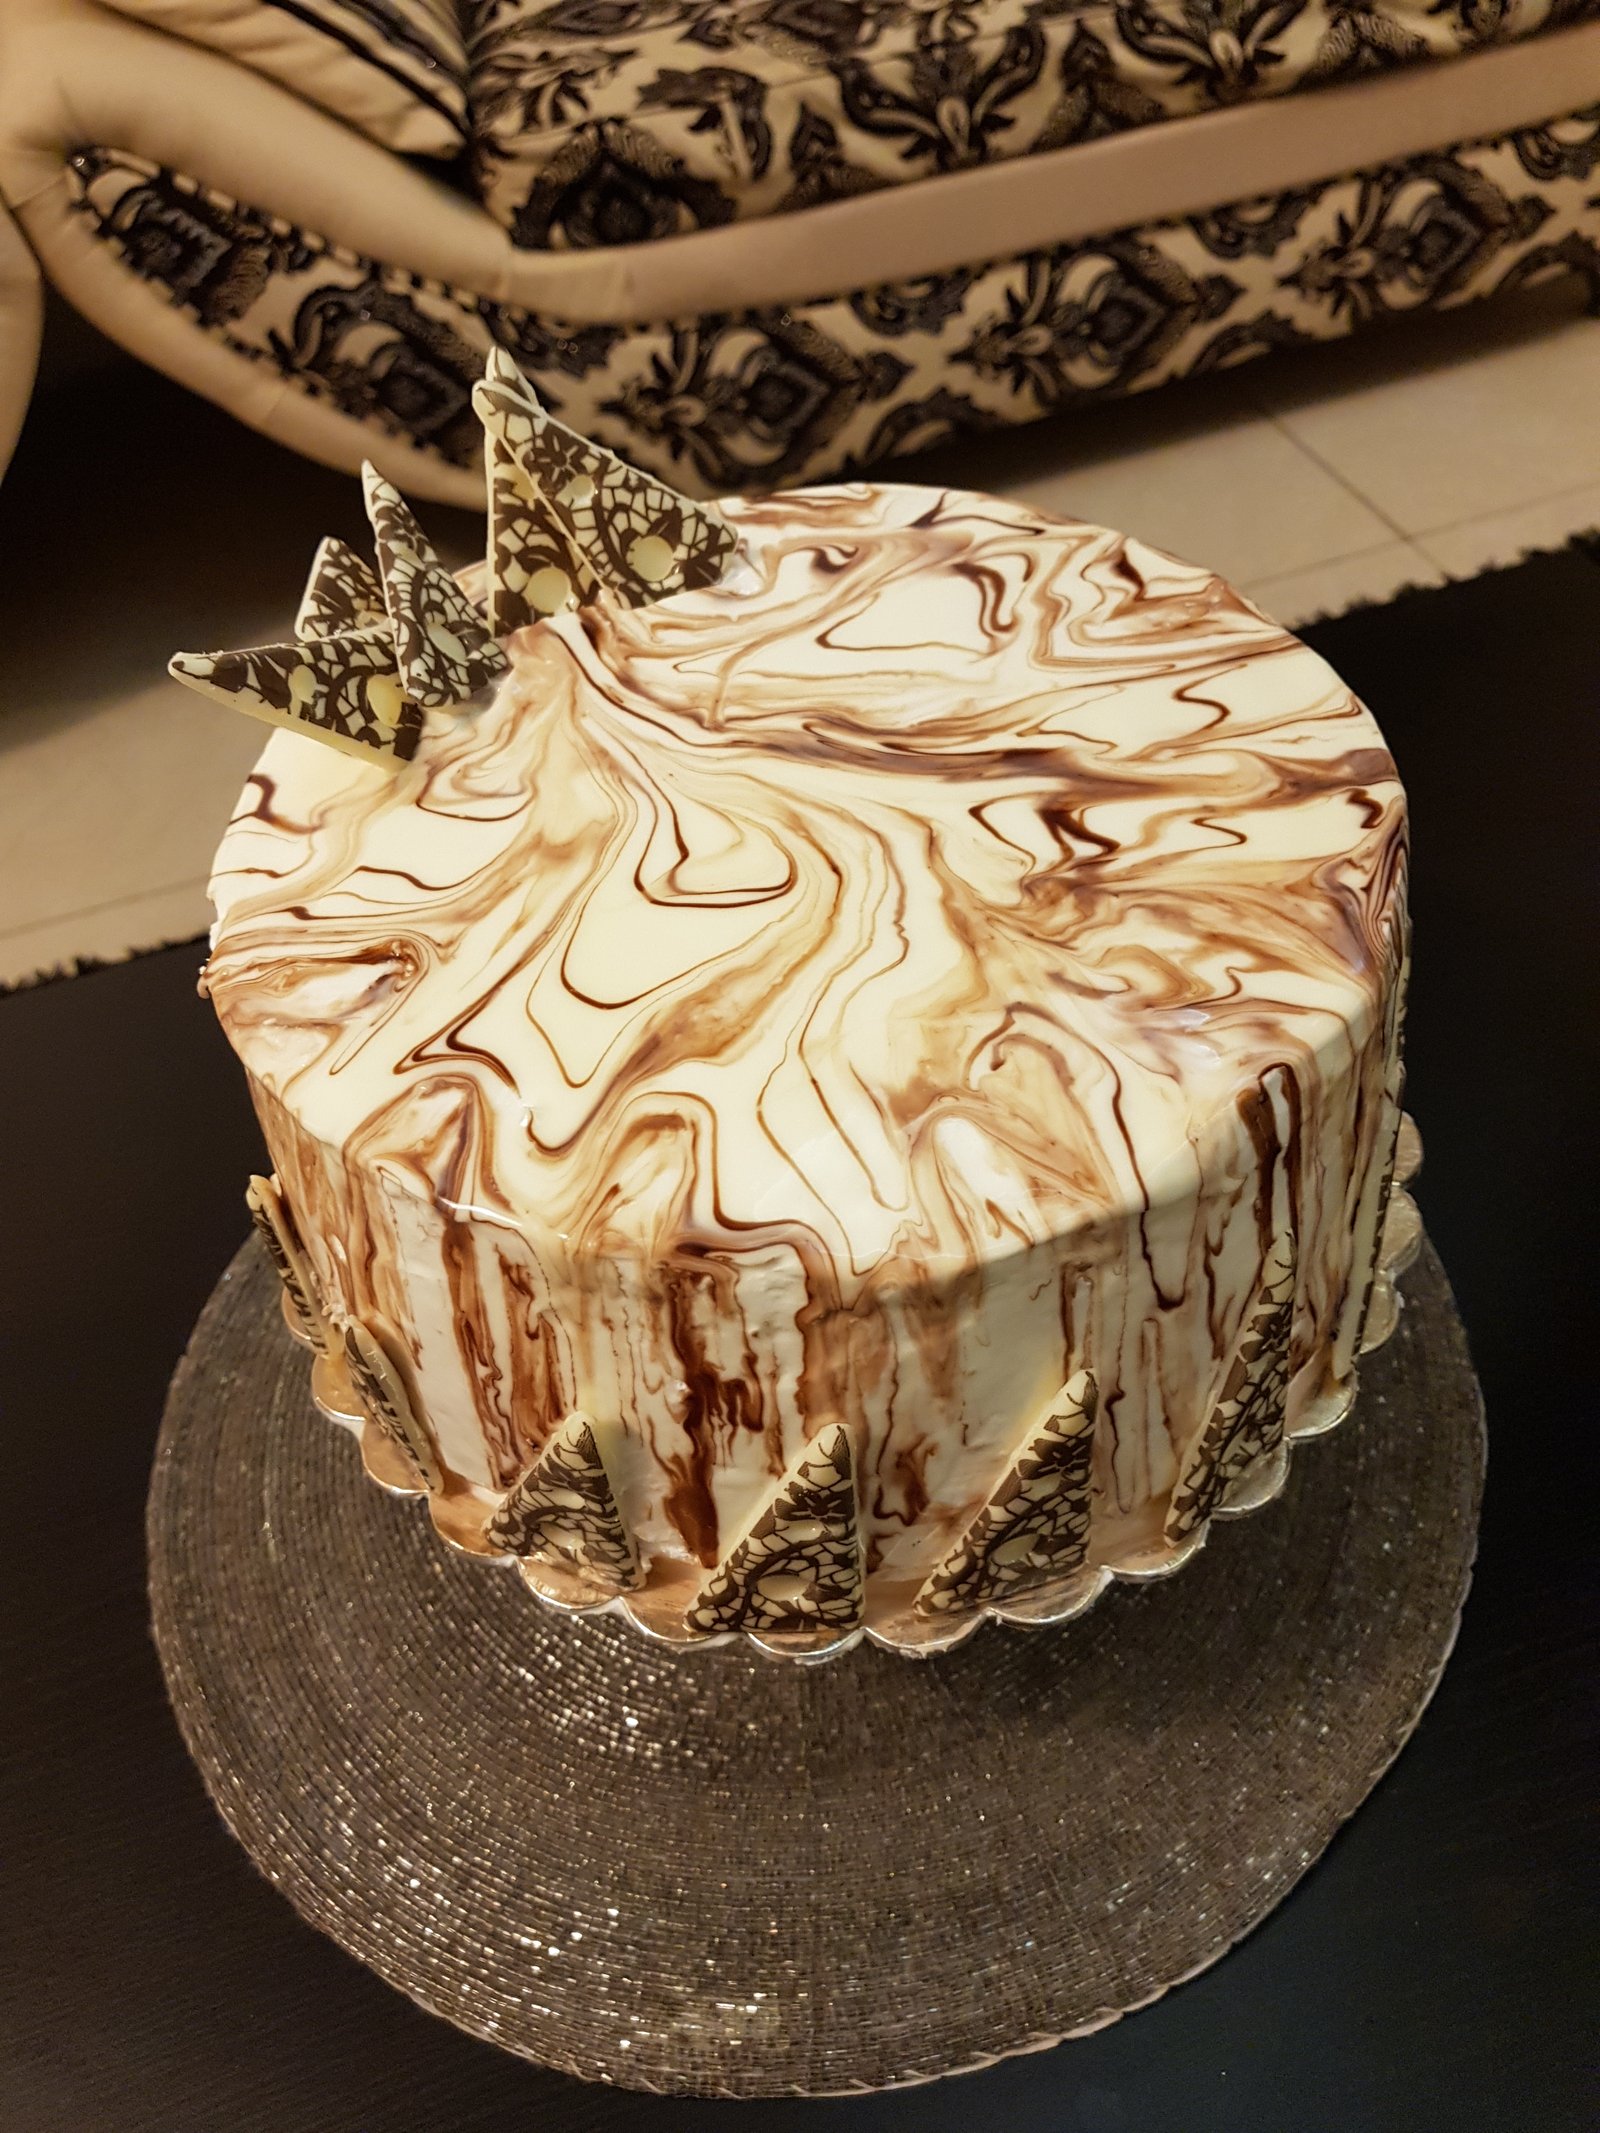 1kg vancho cake - awesome decoration ideas - YouTube